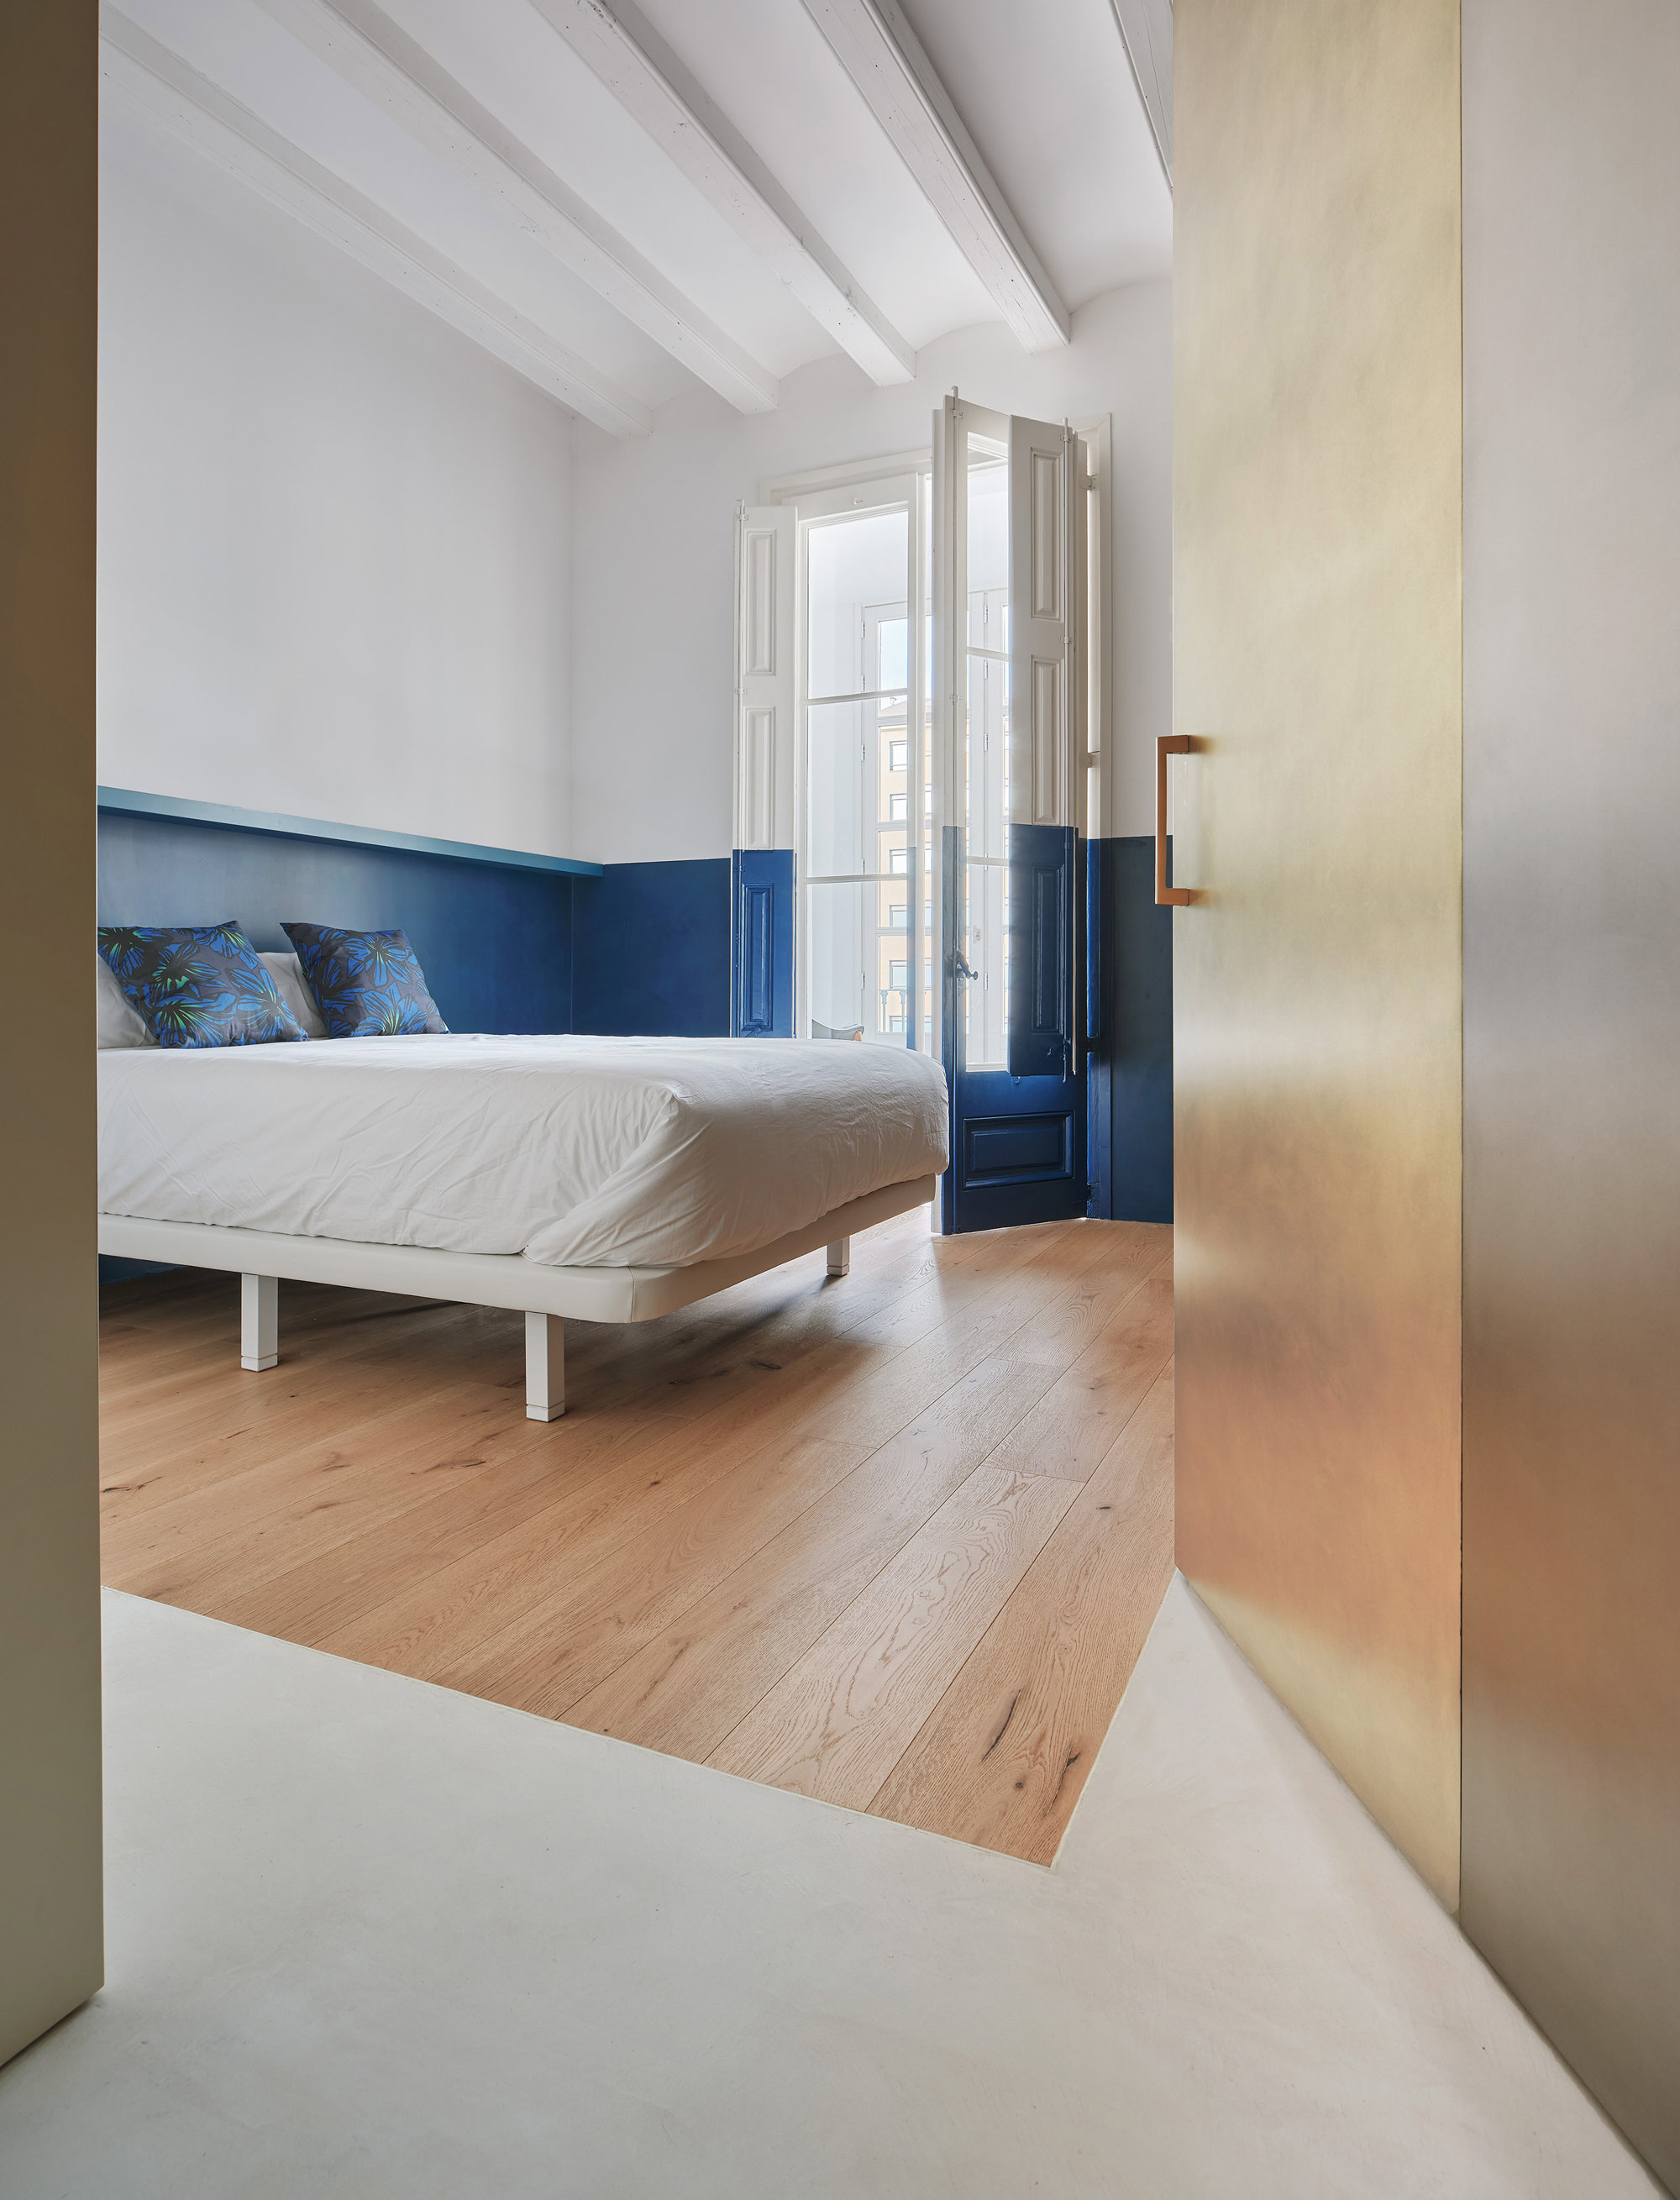 Dormitorio azul parquet 